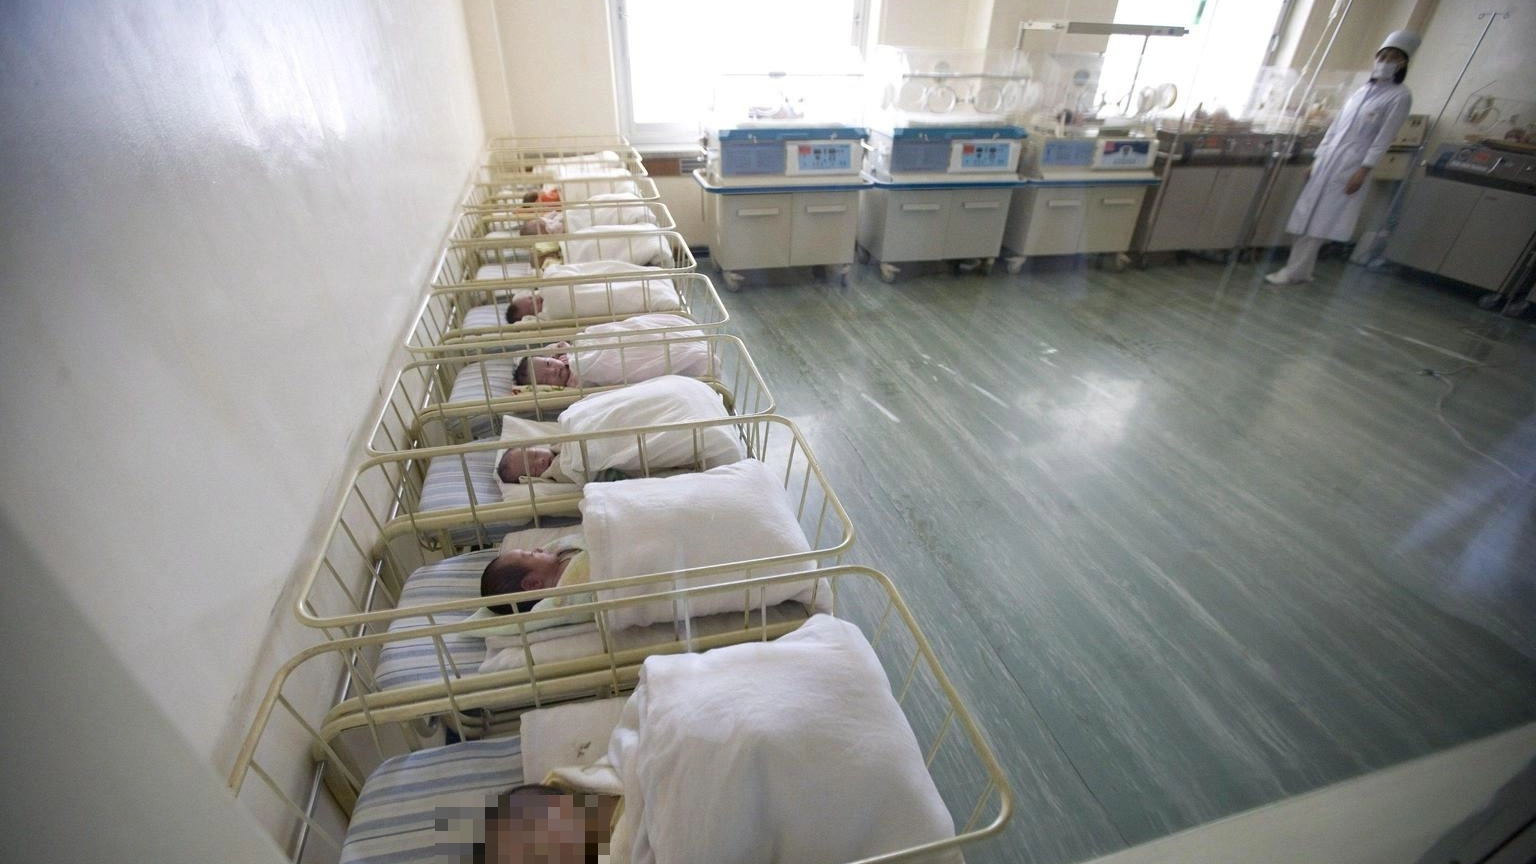 Neonati in un nido d'ospedale